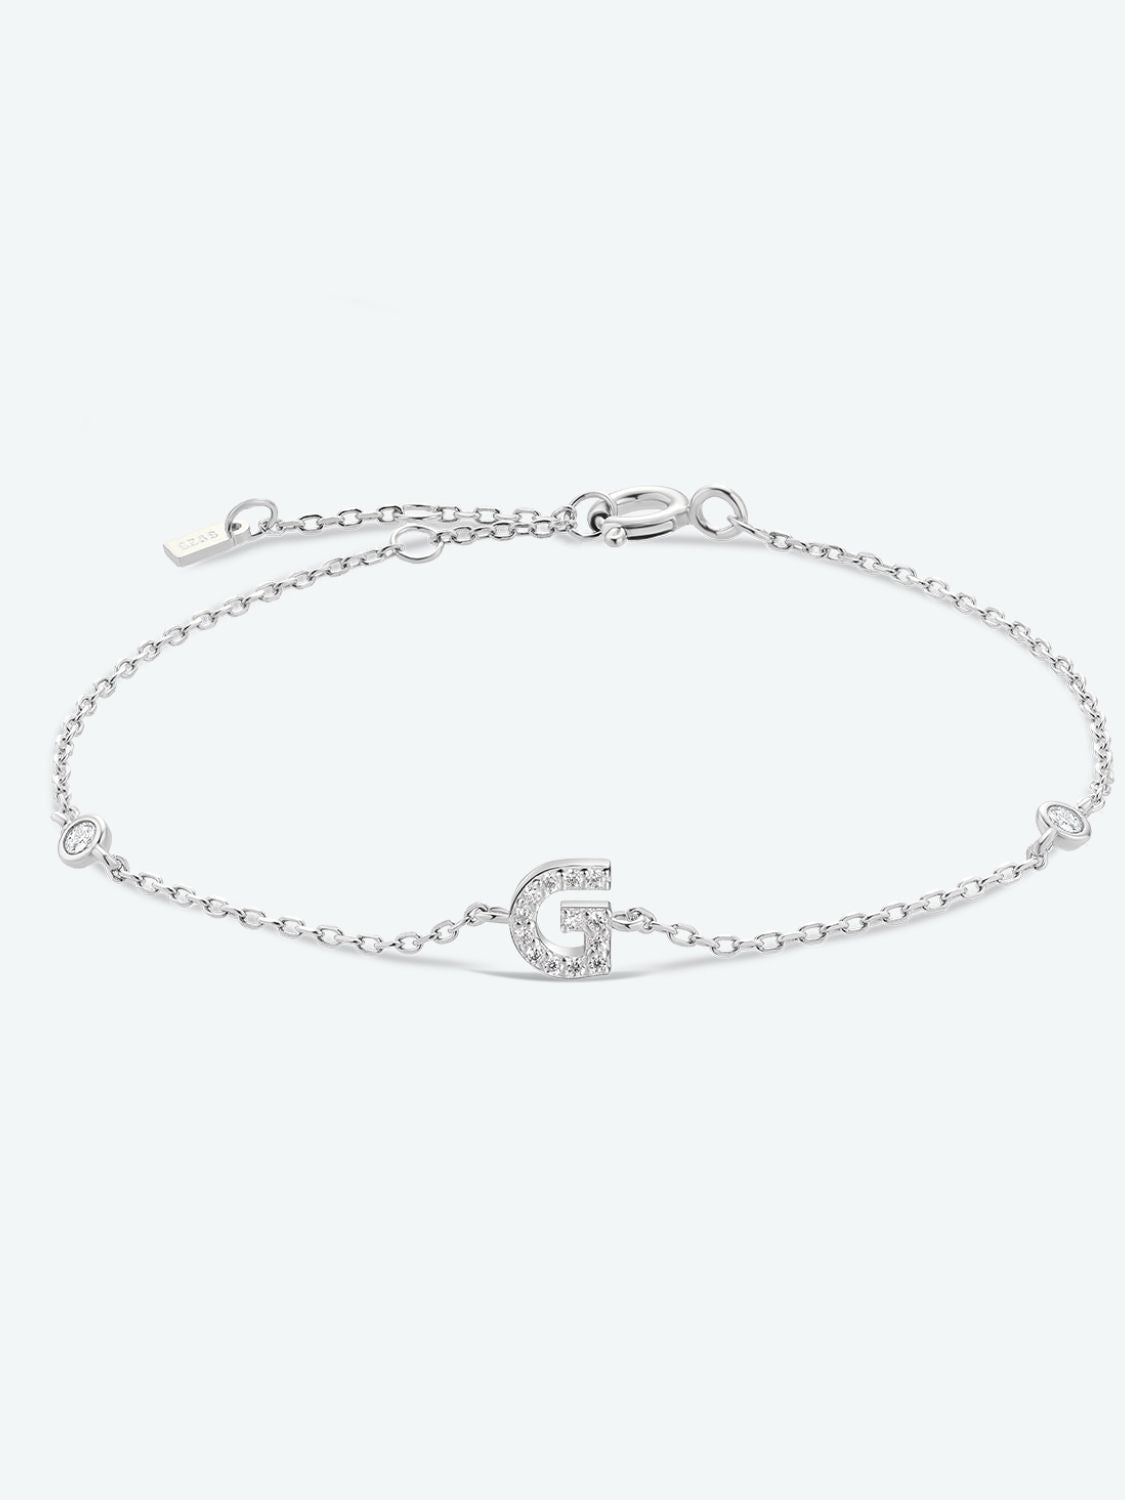 Zircon 925 Sterling Silver Bracelet - G-Silver / One Size - Women’s Jewelry - Bracelets - 4 - 2024